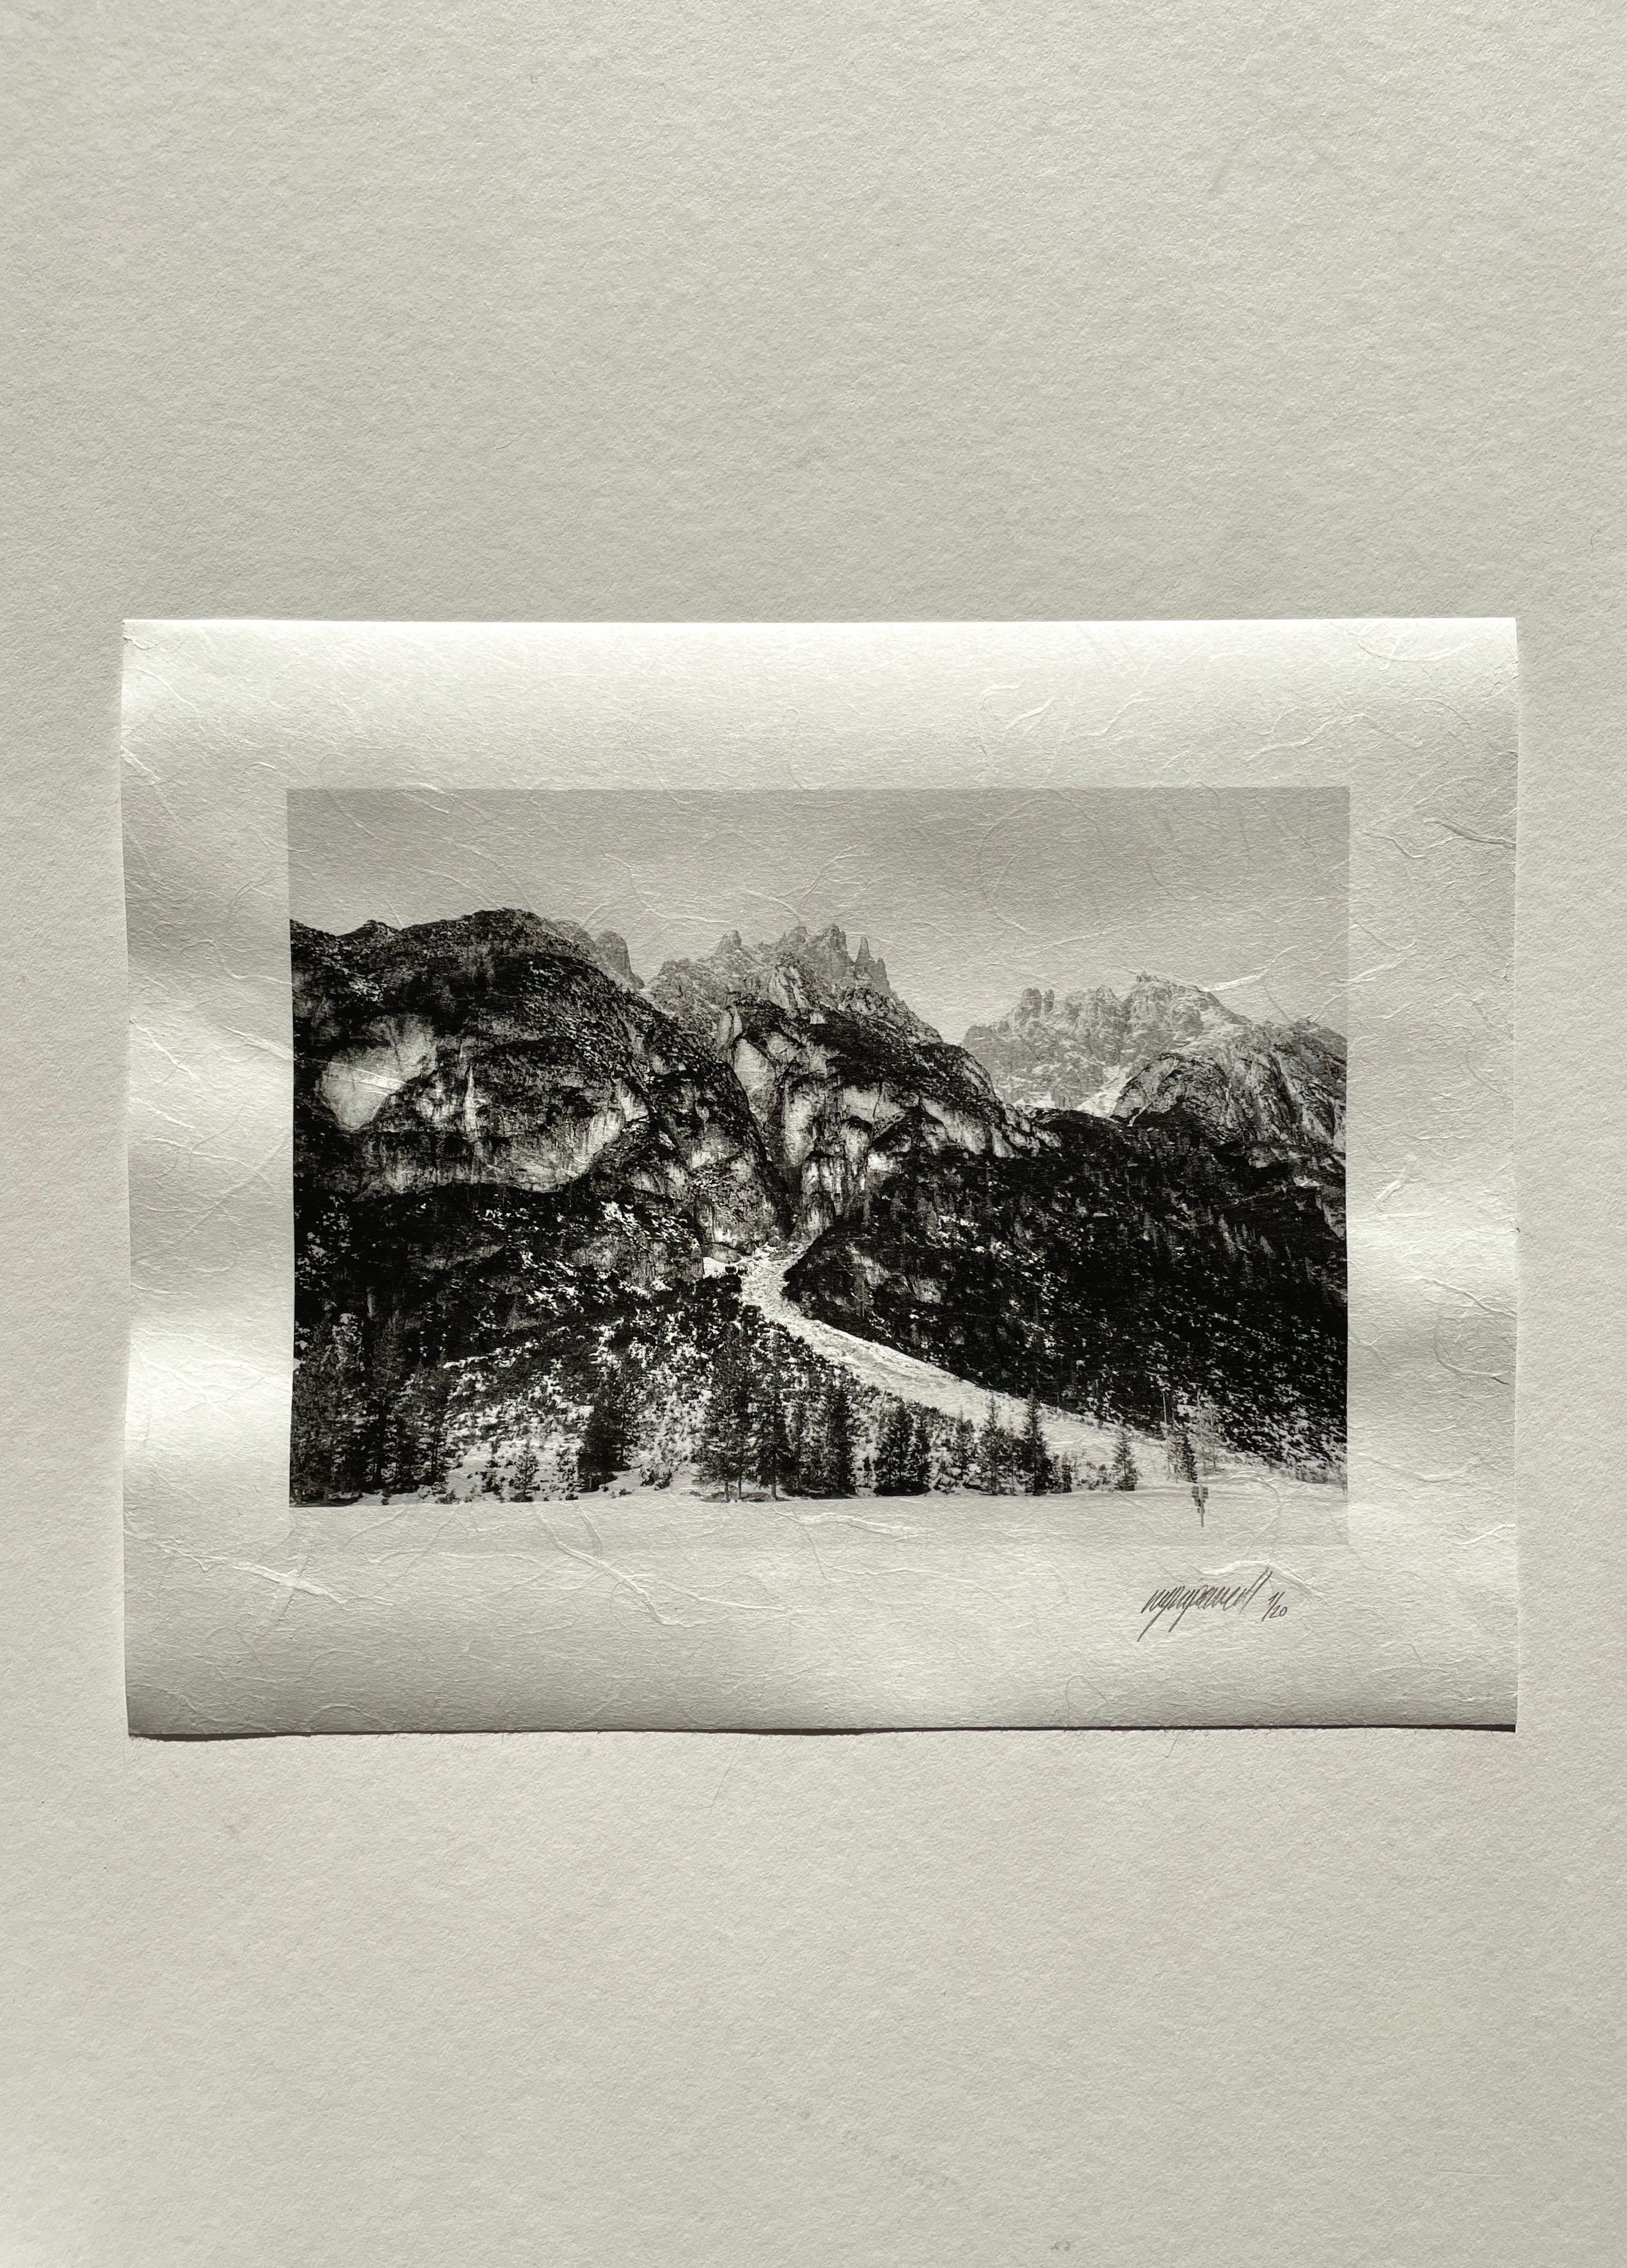 Dolomites n° 3, 2024

Il s'agit d'une photographie argentique en noir et blanc des Dolomites, réalisée à l'aide d'un appareil photo grand format 4x5 Linhof. Ugne Pouwell s'occupe du traitement et de l'impression dans le Studio.

Tiré à 20